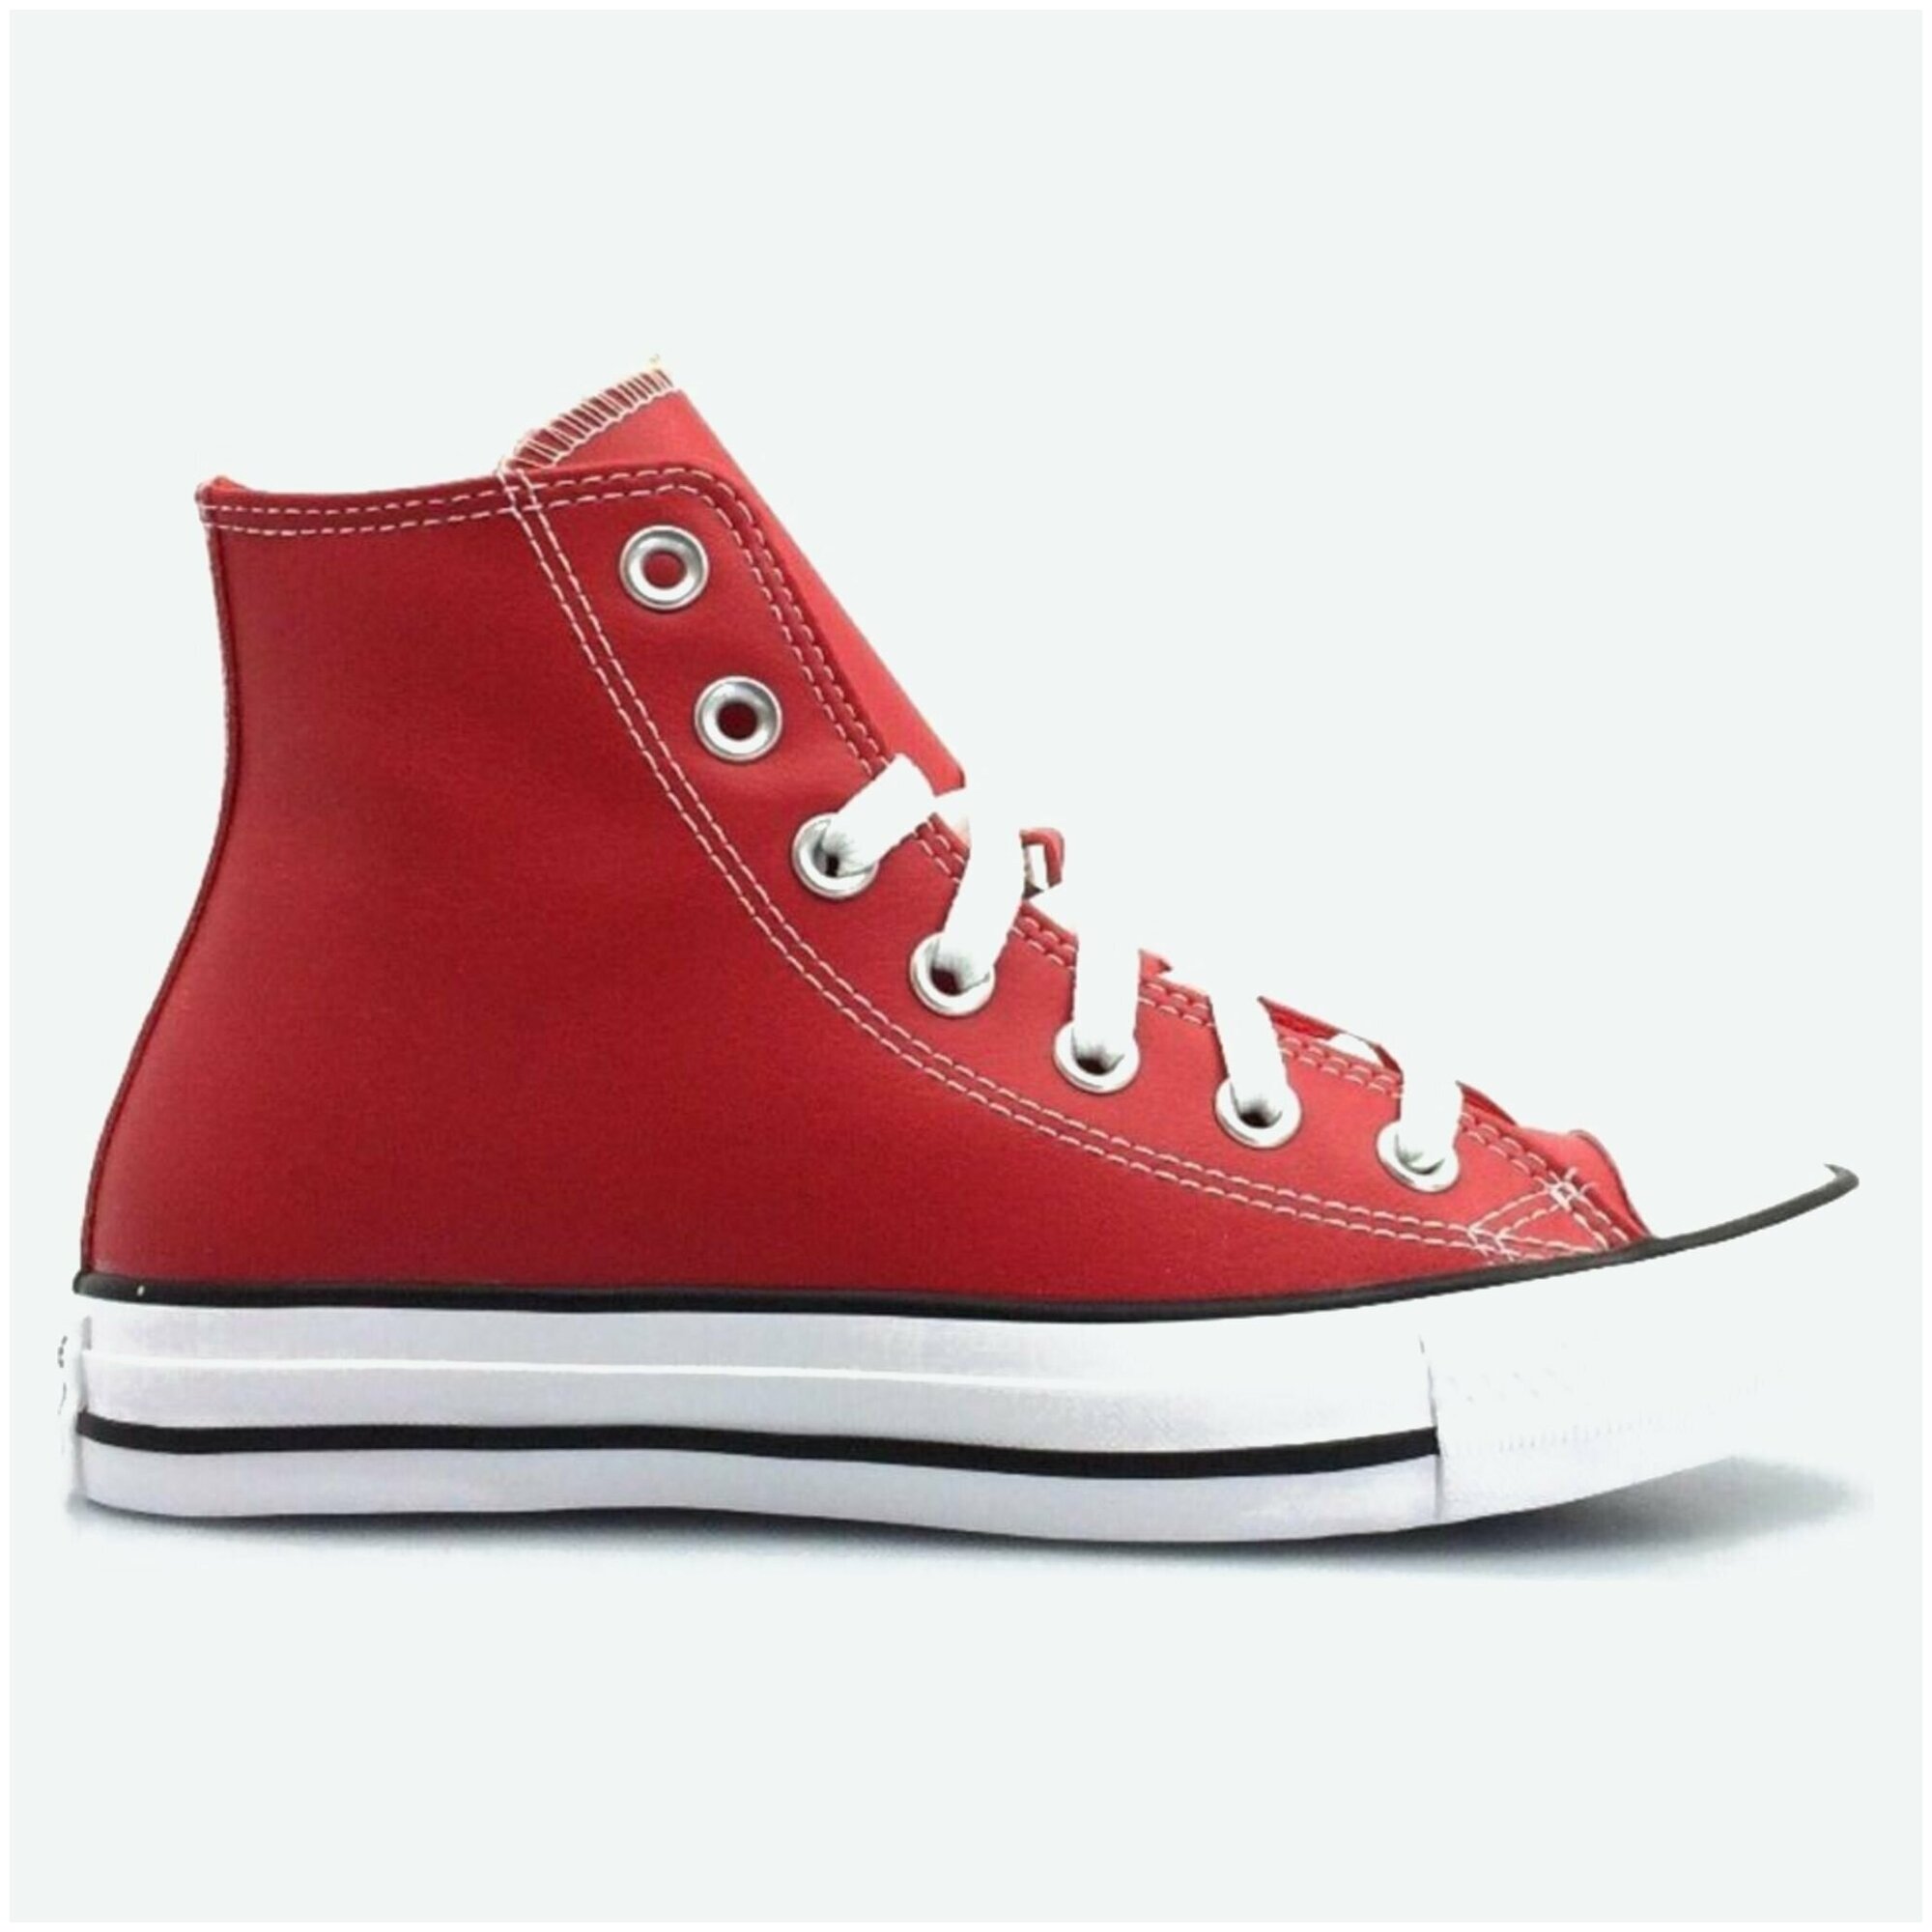 Купить Кеды Converse Chuck Taylor All Star 172698 кожаные высокие красные  за 14040р. с доставкой